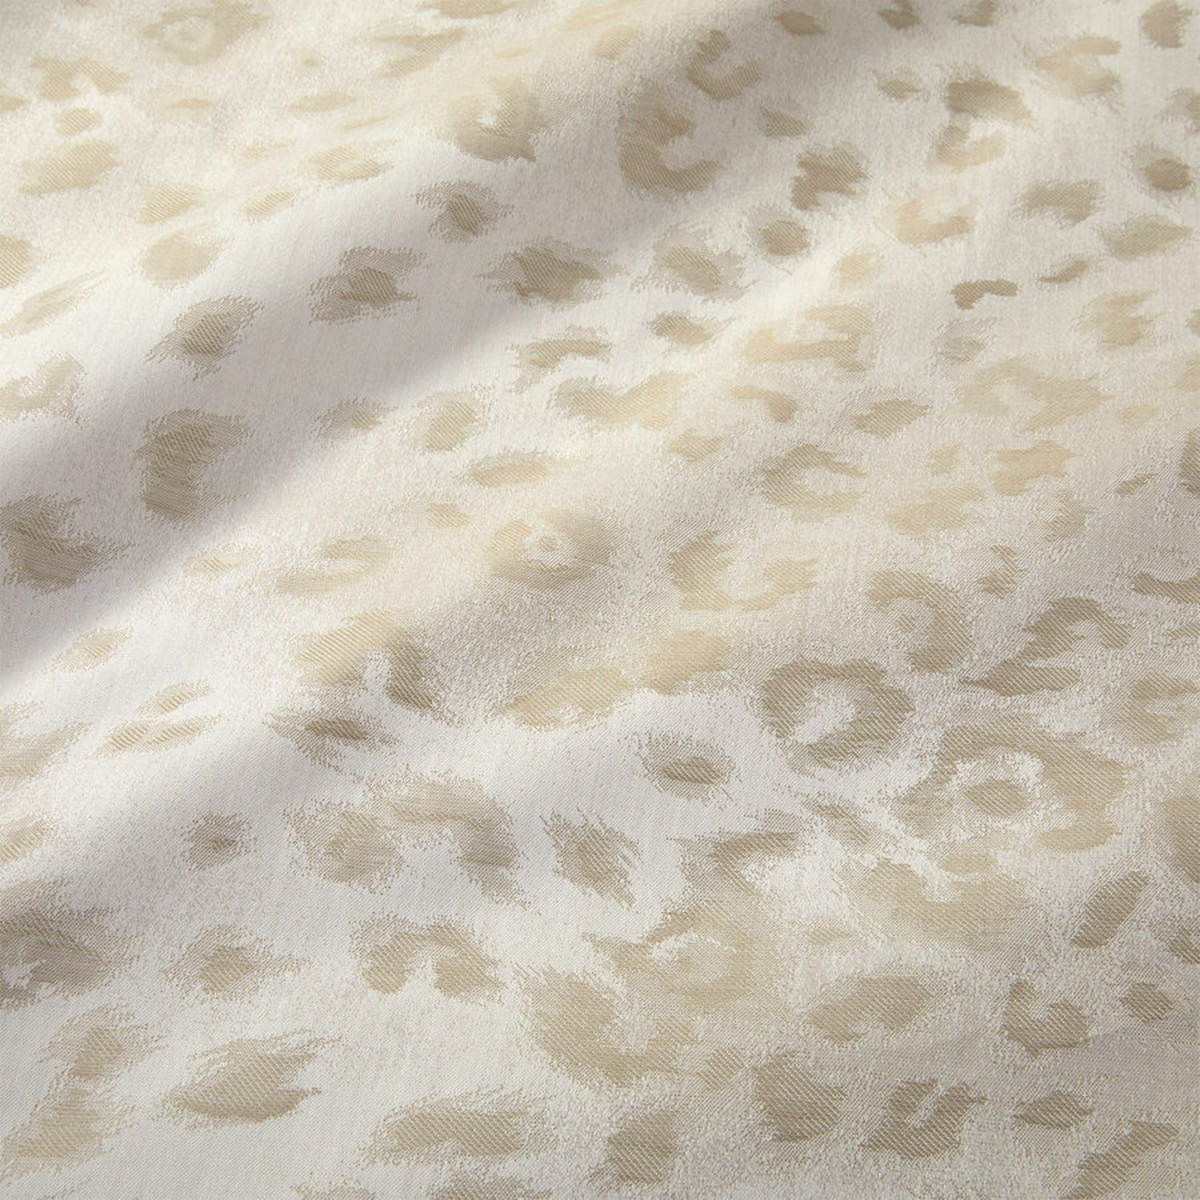 Fabric Closeup of Yves Delorme Tioman Bedding